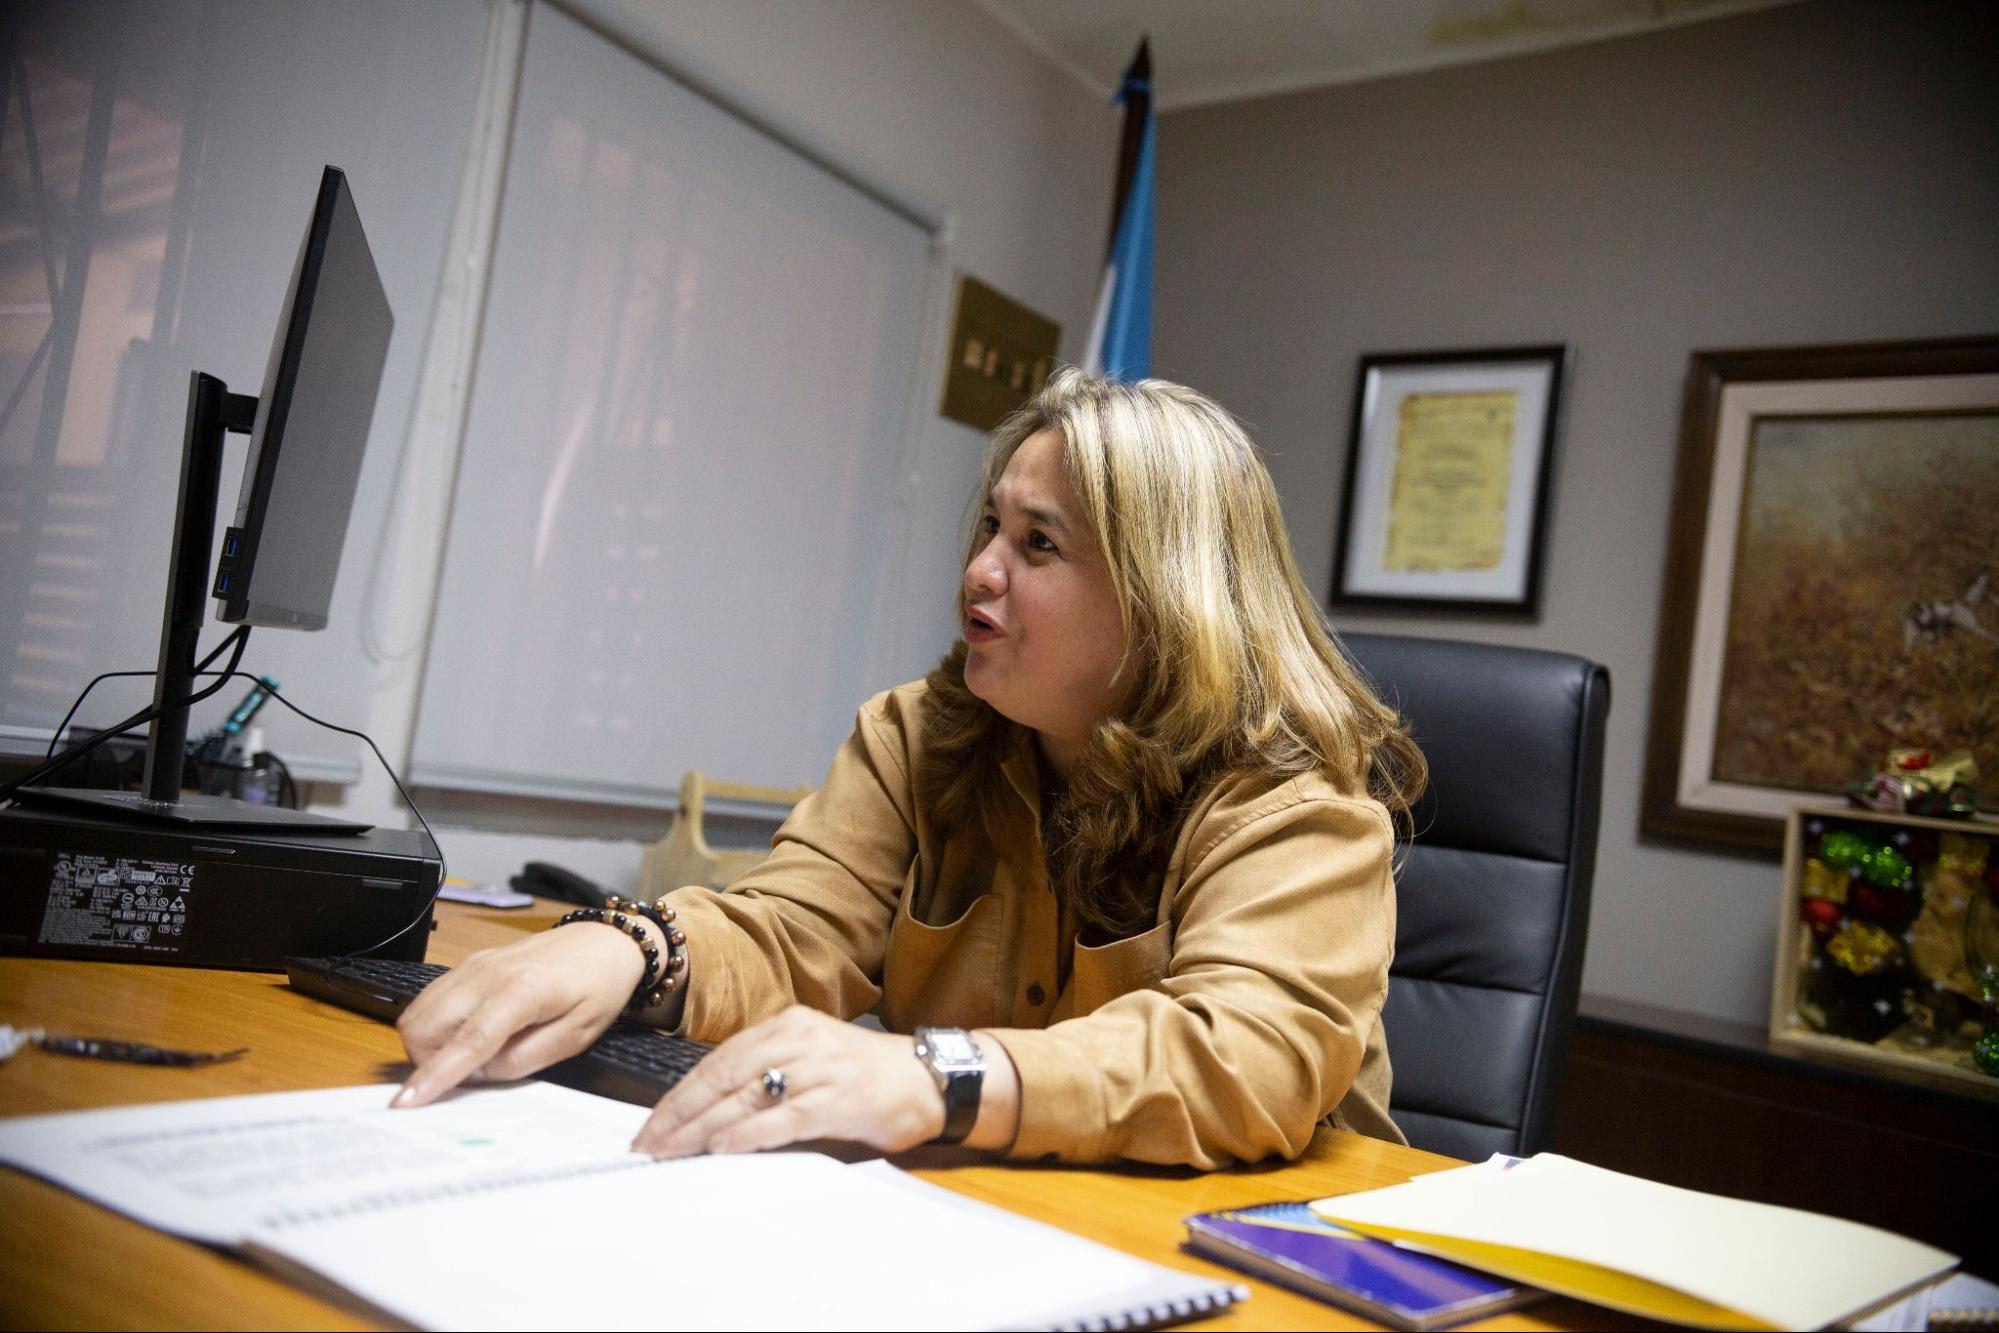 La viceministra de Seguridad, Julissa Villanueva muestra los informes que preparó durante su breve paso como inventora del sistema penitenciario. Foto CC/Fernando Destephen